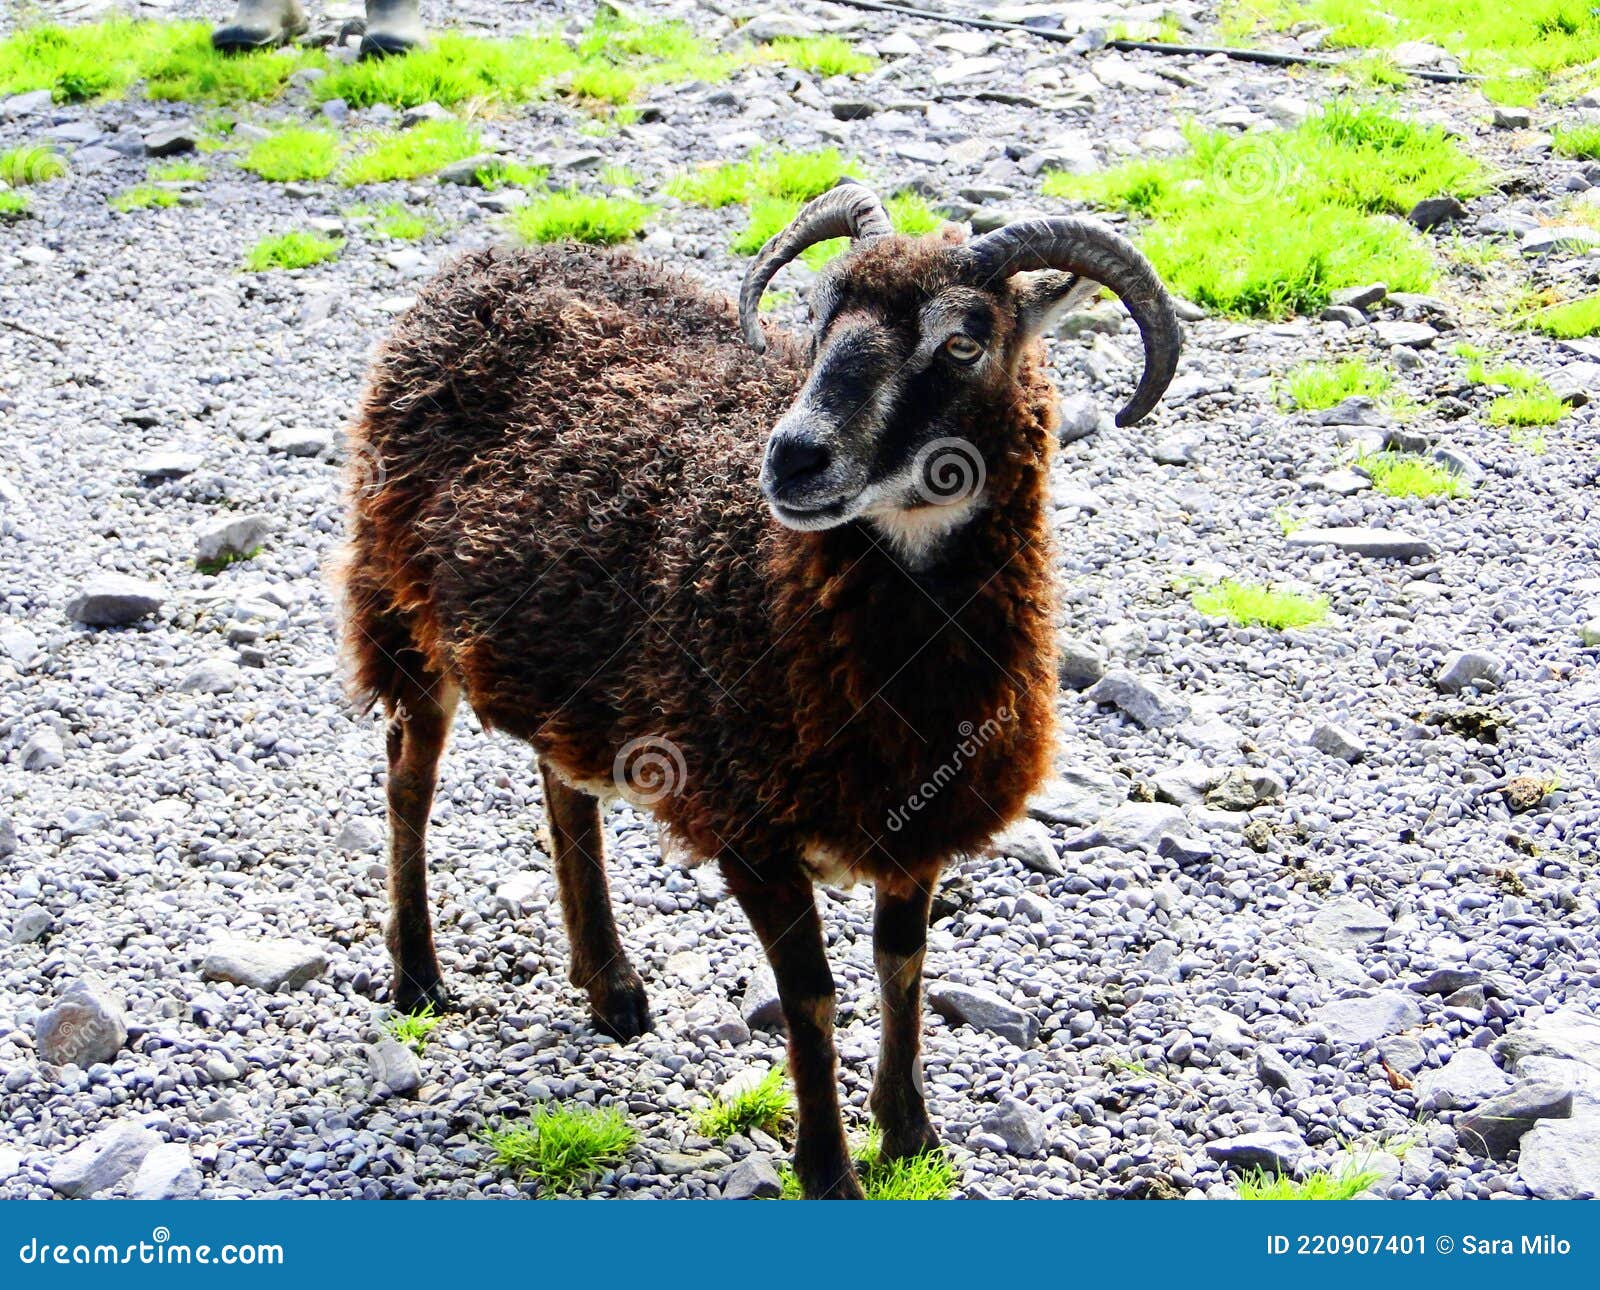 ireland, irish sheep -irlanda pecore irlandesi